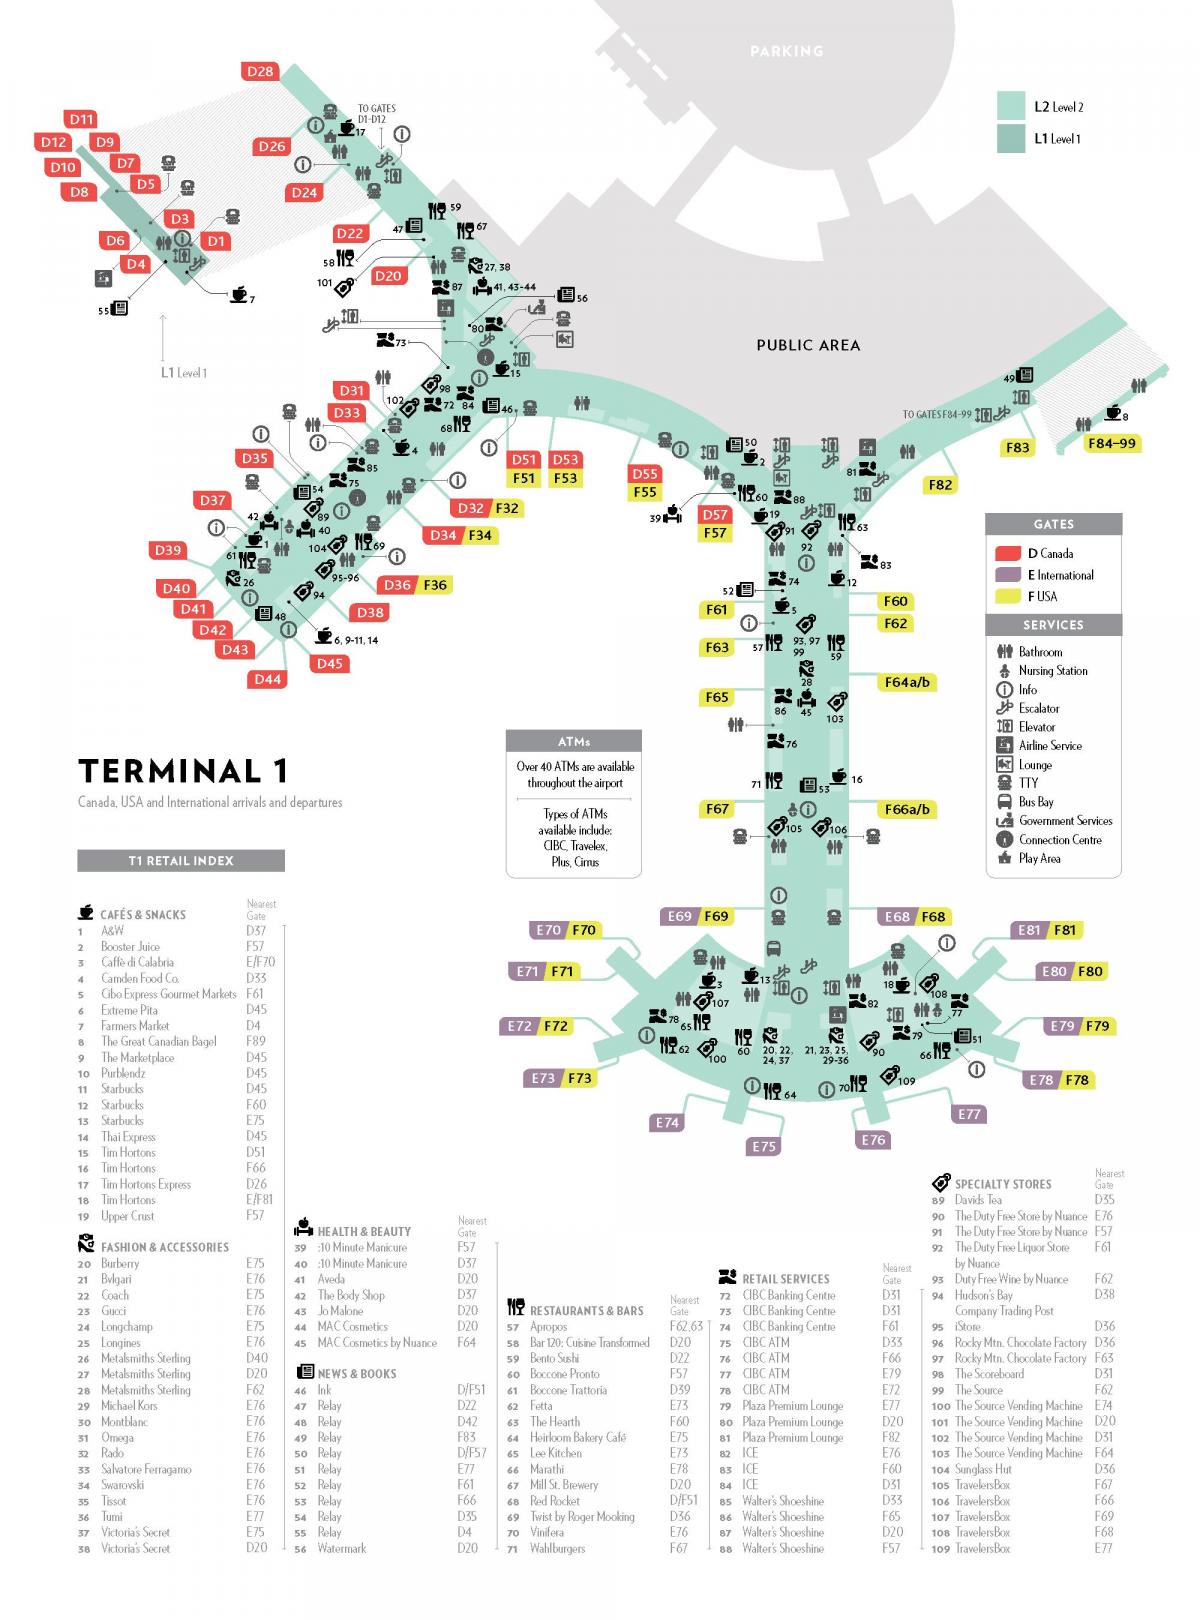 pearson terminal 1 map